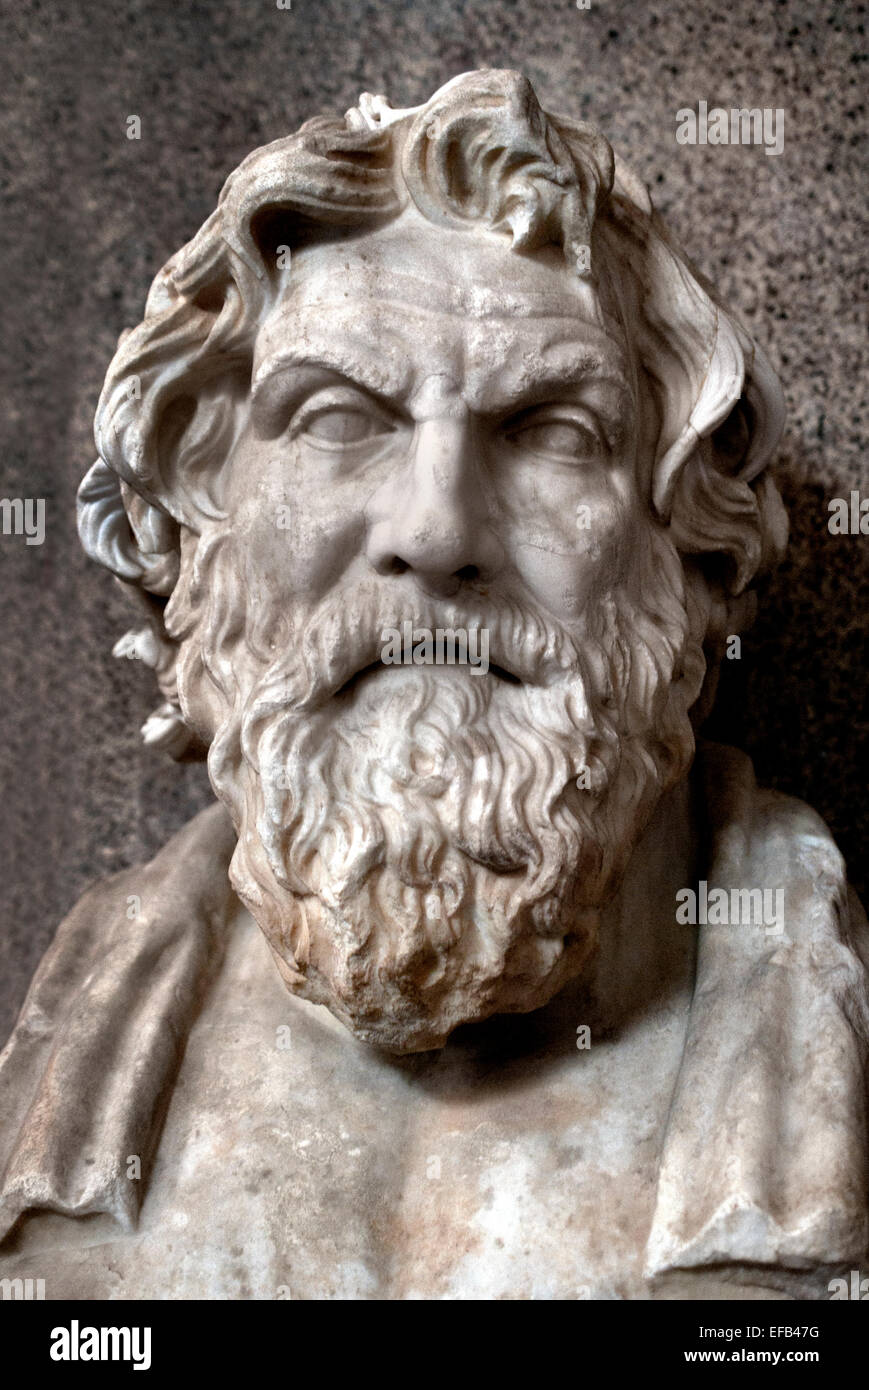 Antistene era un filosofo greco allievo di Socrate copia romana dopo un originale ellenistico. ( Museo del Vaticano Roma Italia ) Foto Stock